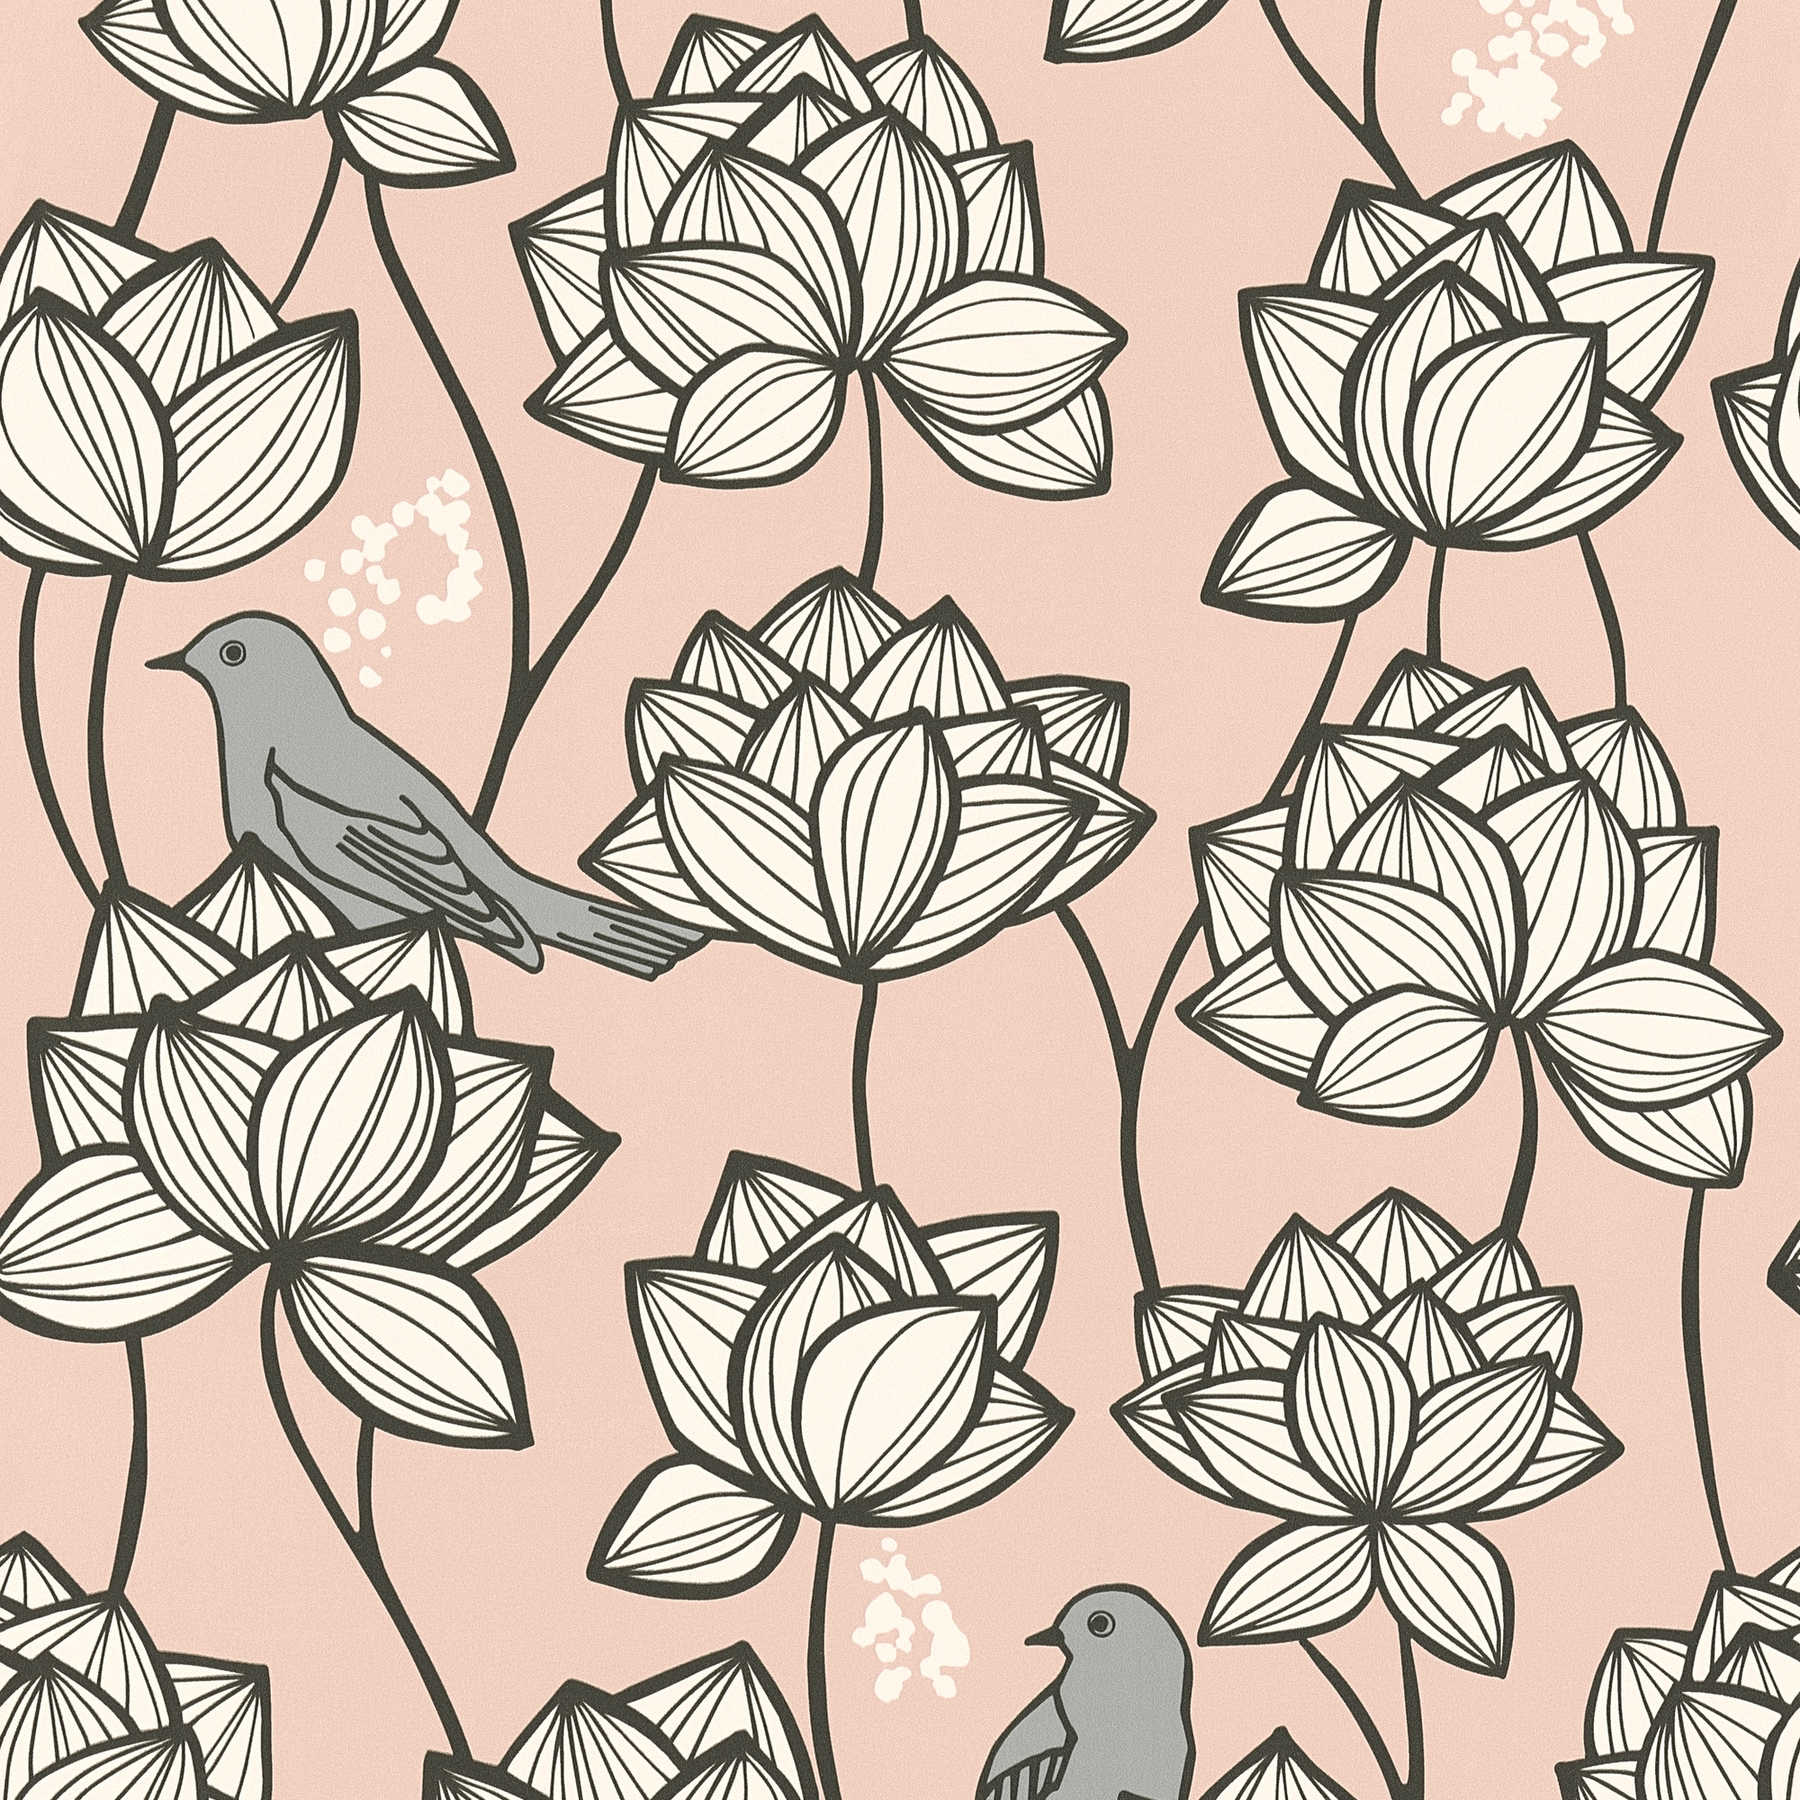 Vliesbehang bloemen ranken met vogels in line art stijl - grijs, roze
